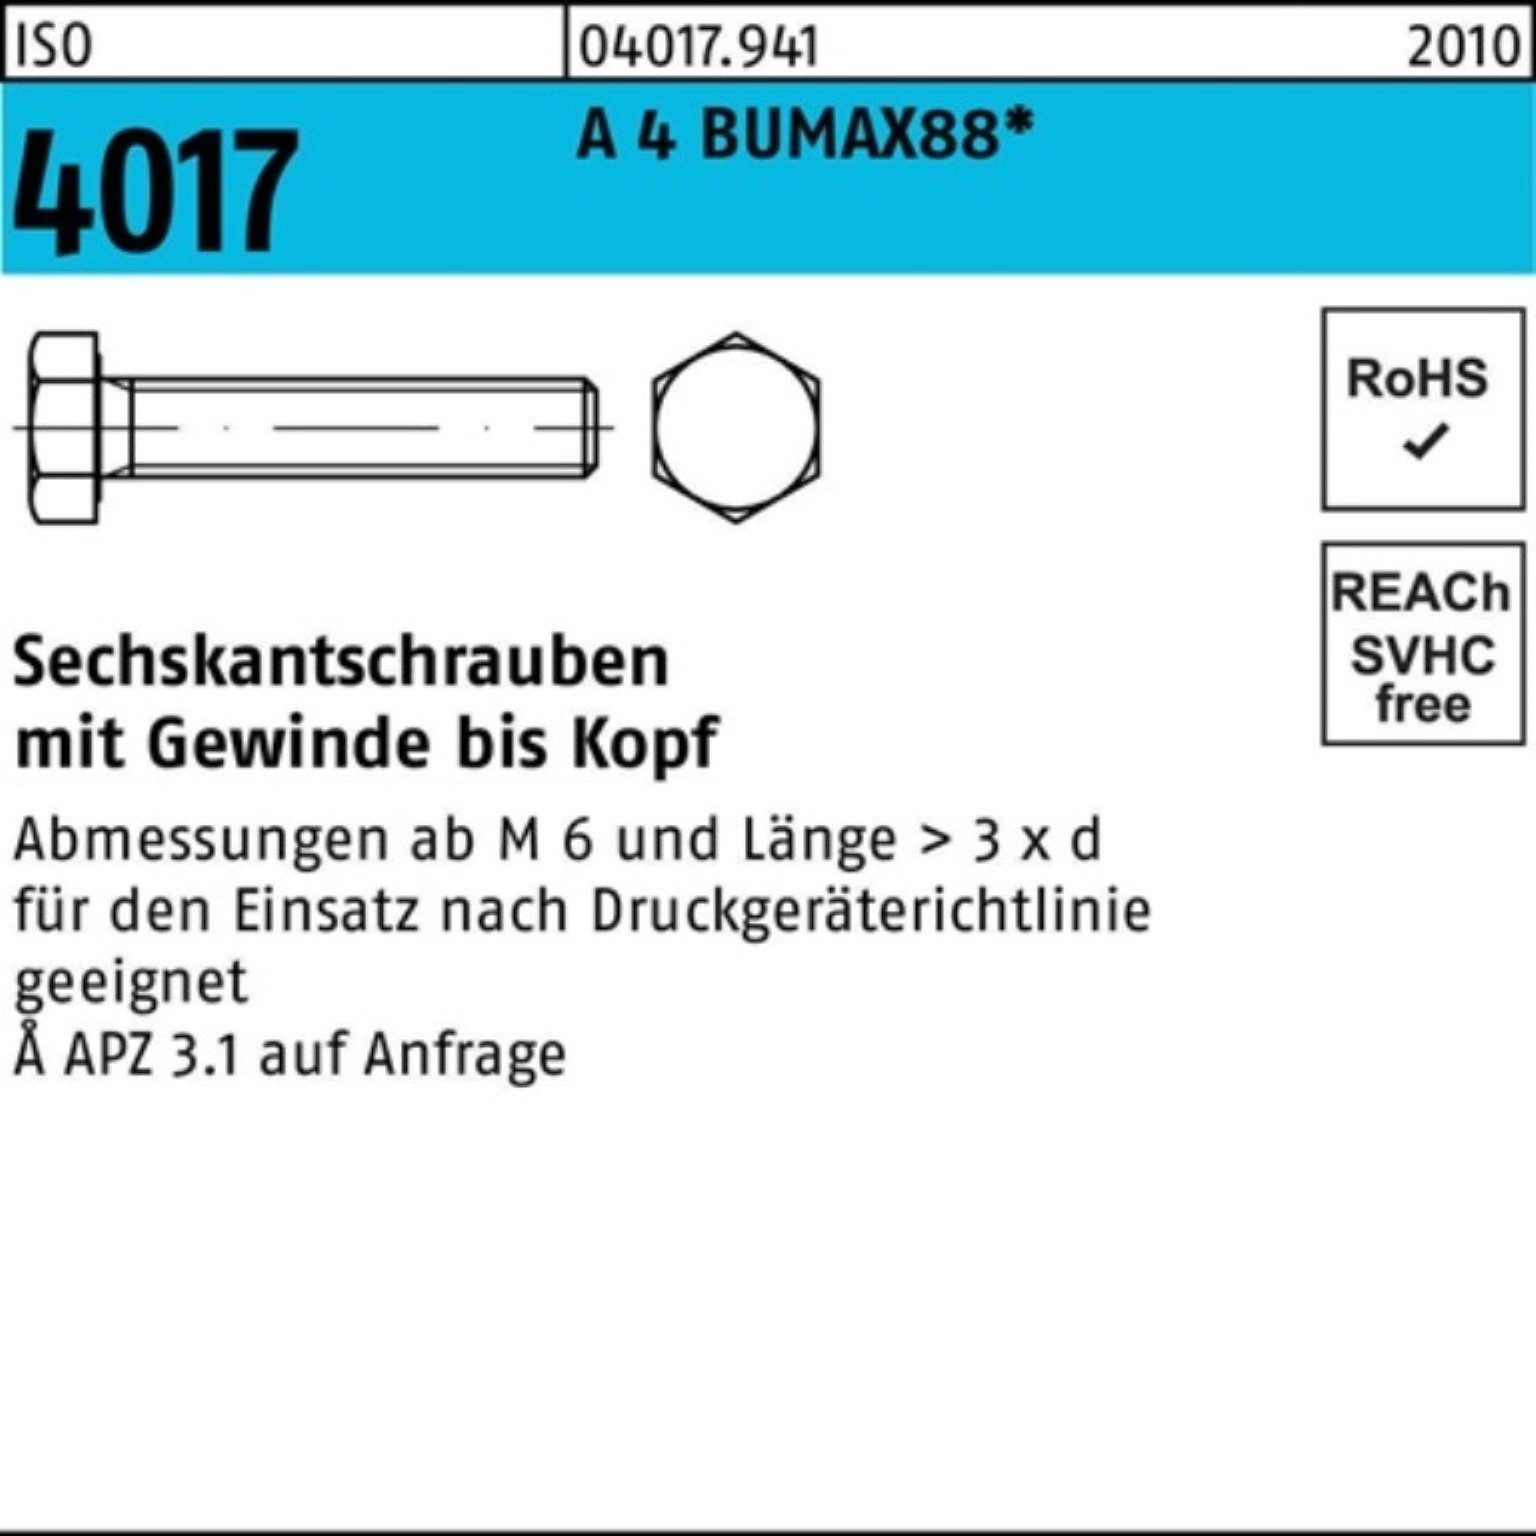 Bufab Sechskantschraube 100er Pack Sechskantschraube 4 30 Stück 50 M10x 4017 ISO A VG BUMAX88